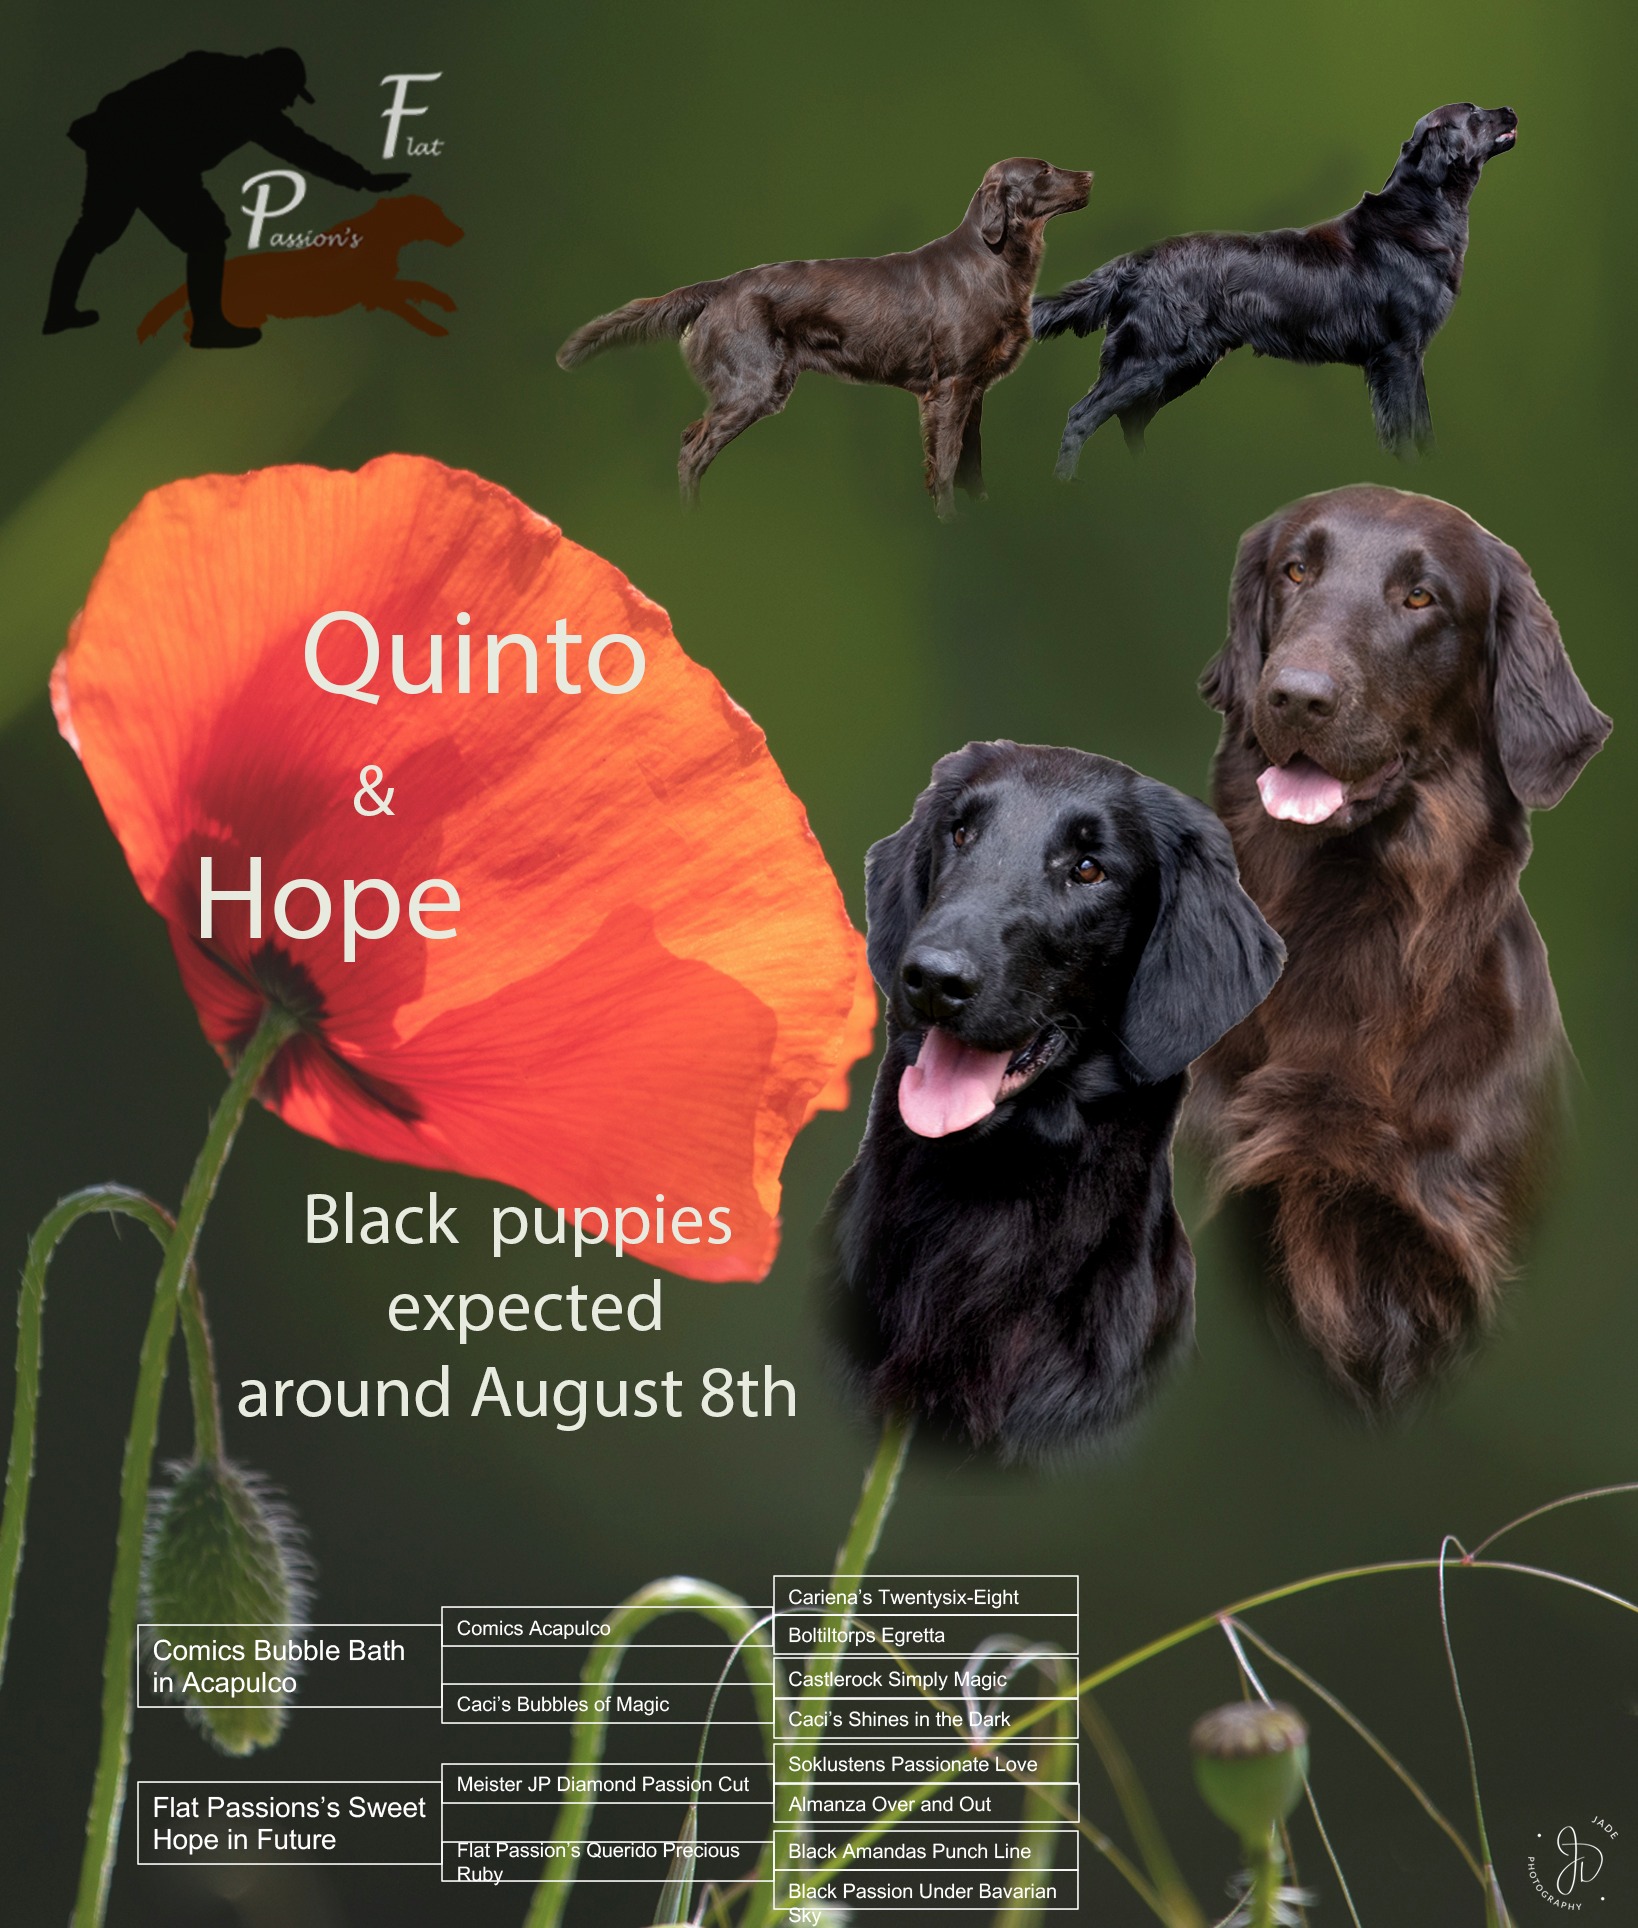 Hope is drachtig, zwarte pups worden verwacht rond 8 augustus